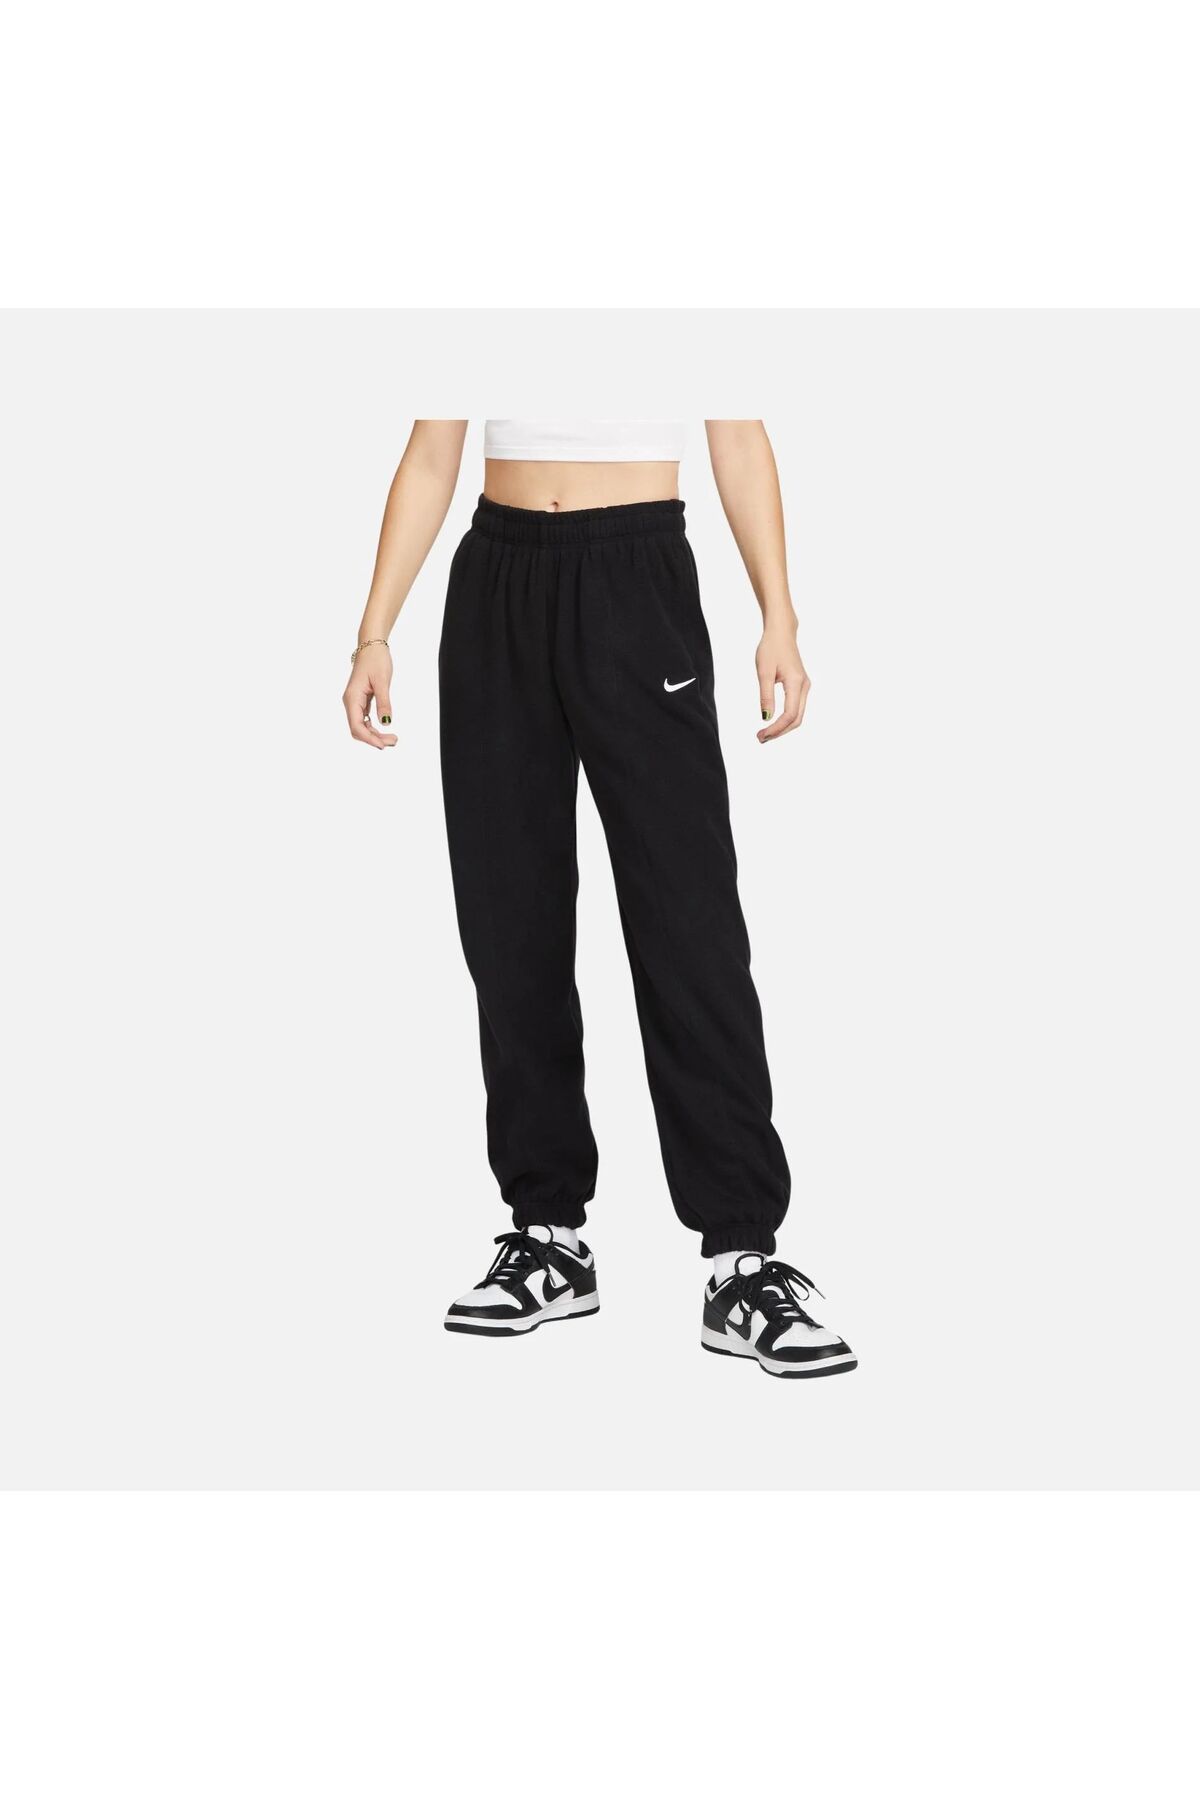 Nike Sportswear Fleece High Waisted Oversized Siyah Kadın Polar Eşofman Altı